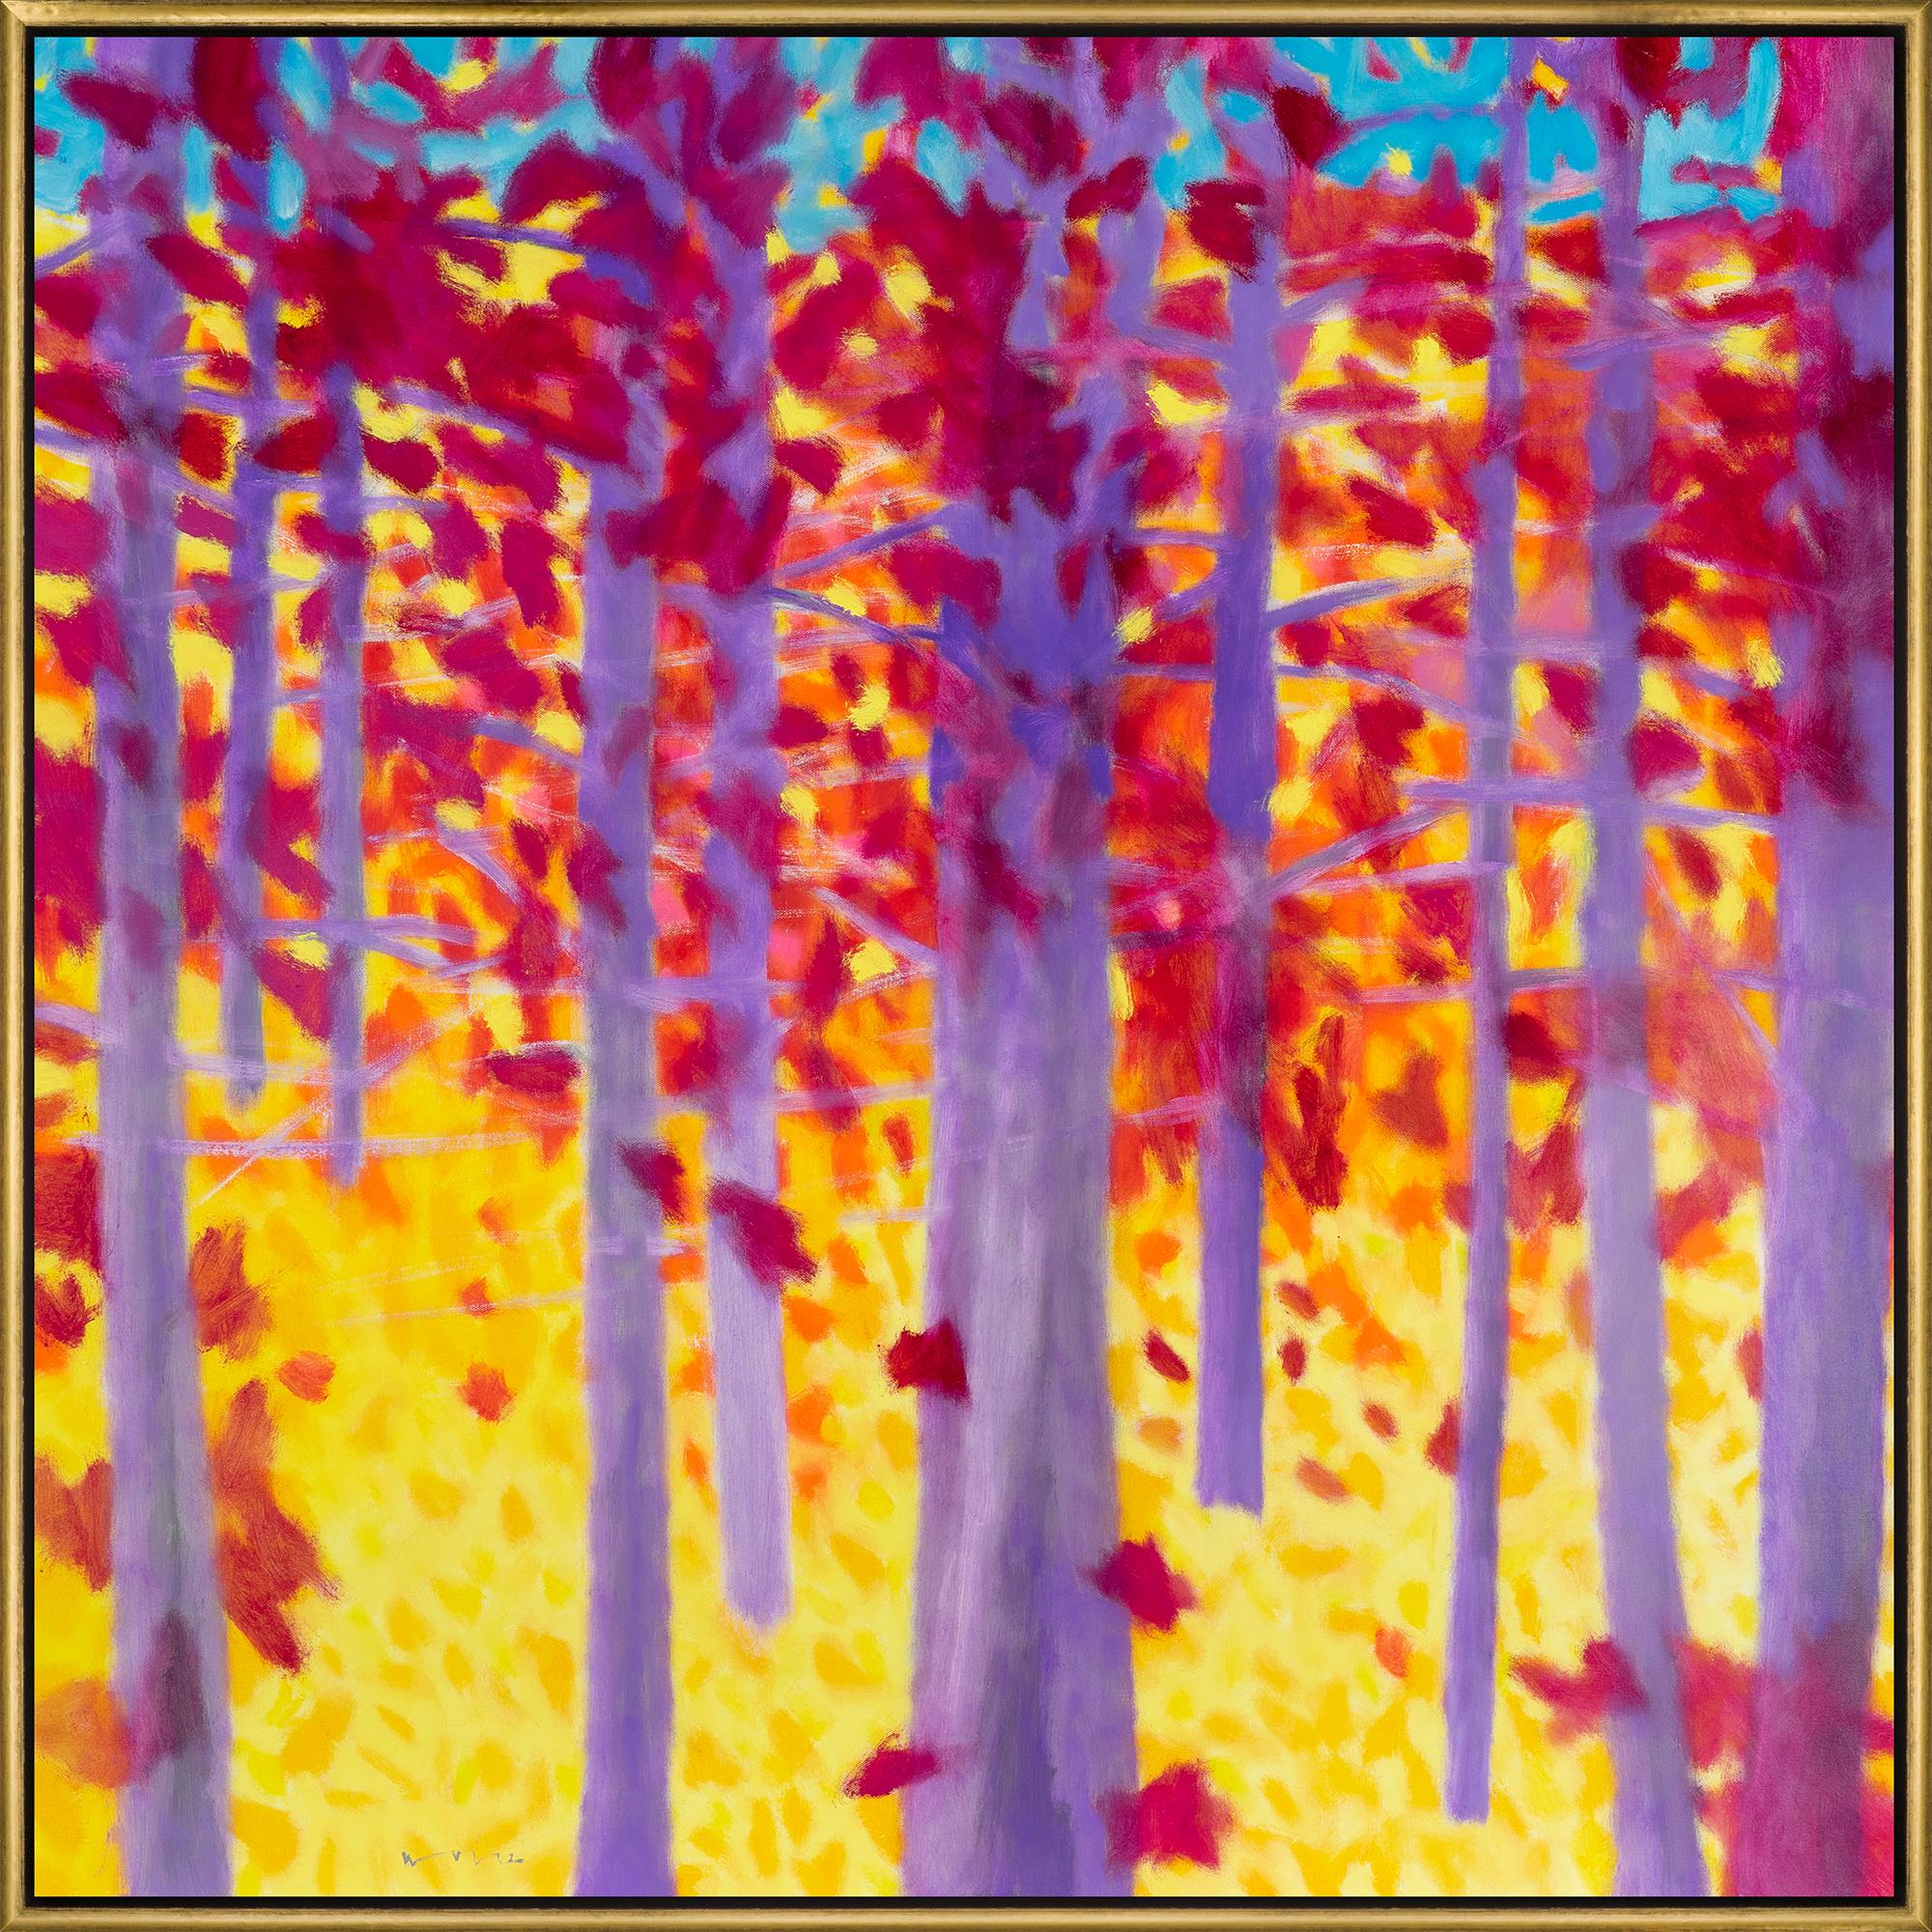 Abstract Painting Marshall Noice - "Deeper" Paysage abstrait contemporain Peinture à l'huile sur toile encadrée